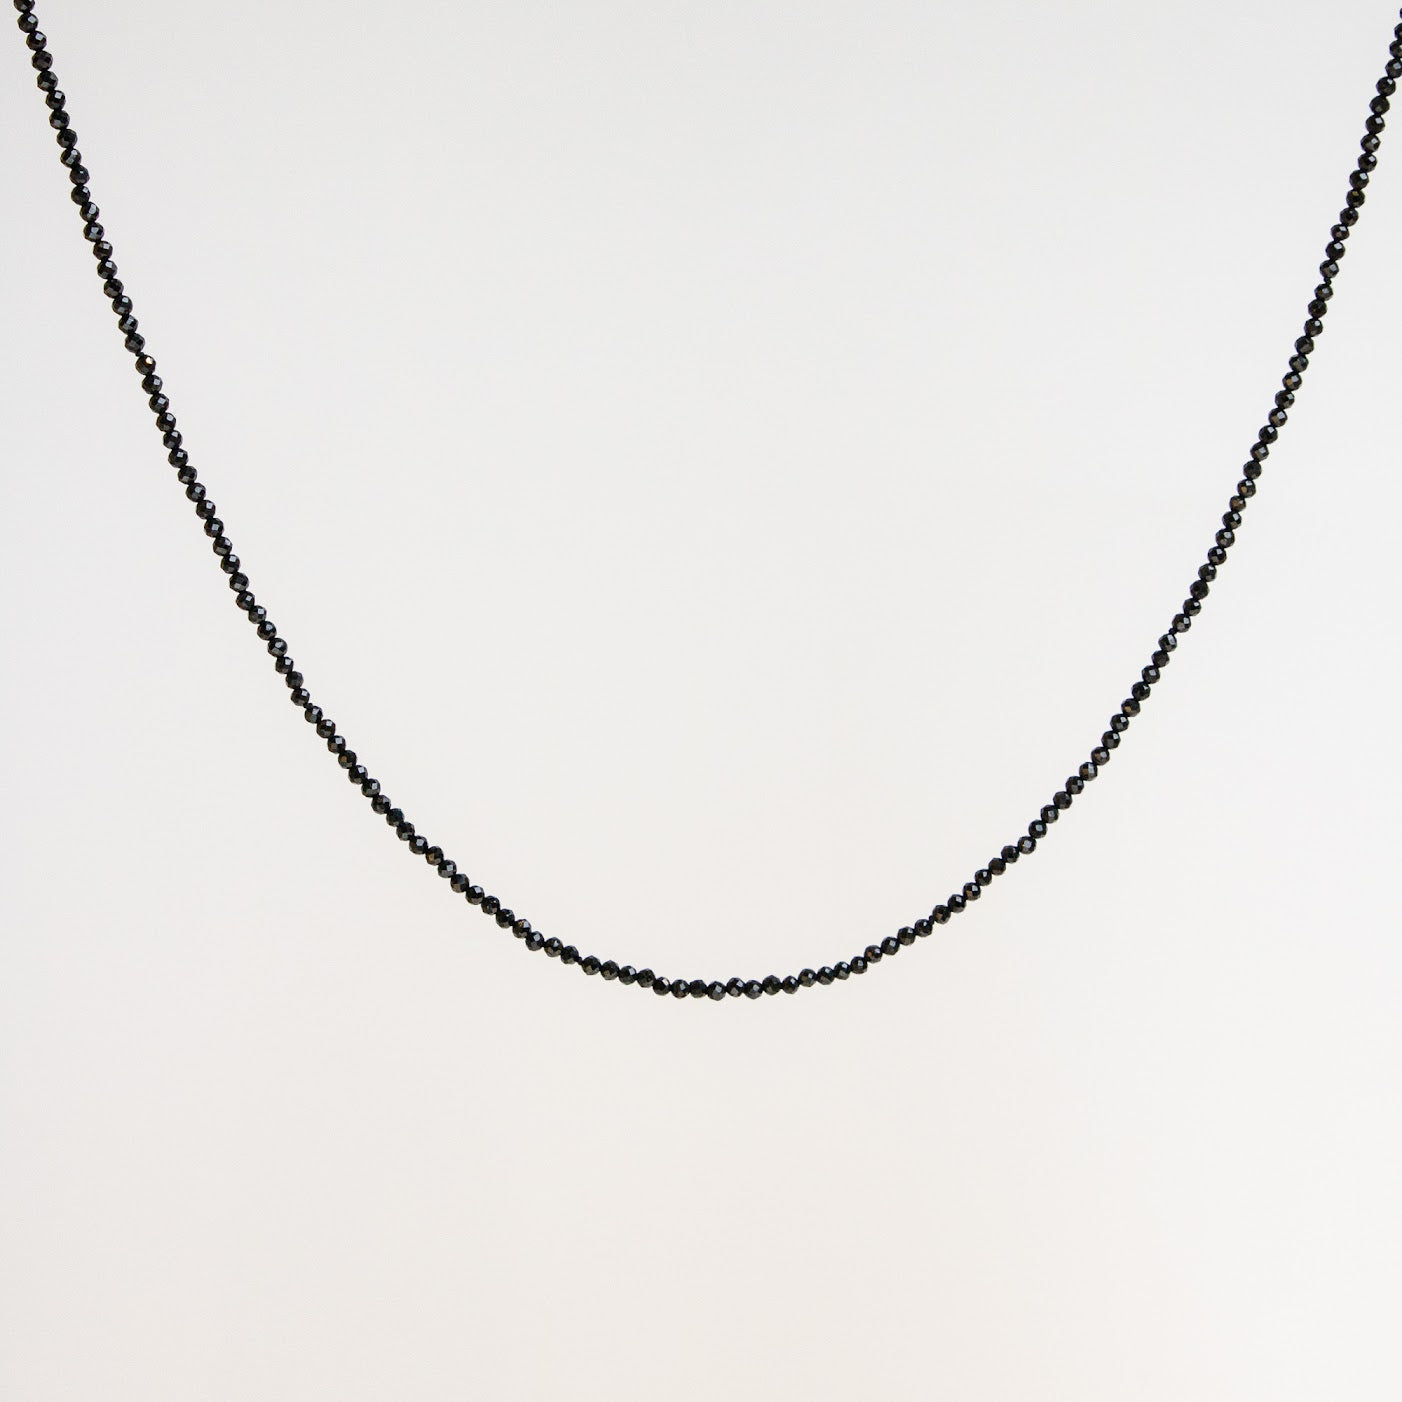 10K Petite Gemstone Necklace Black Spinel